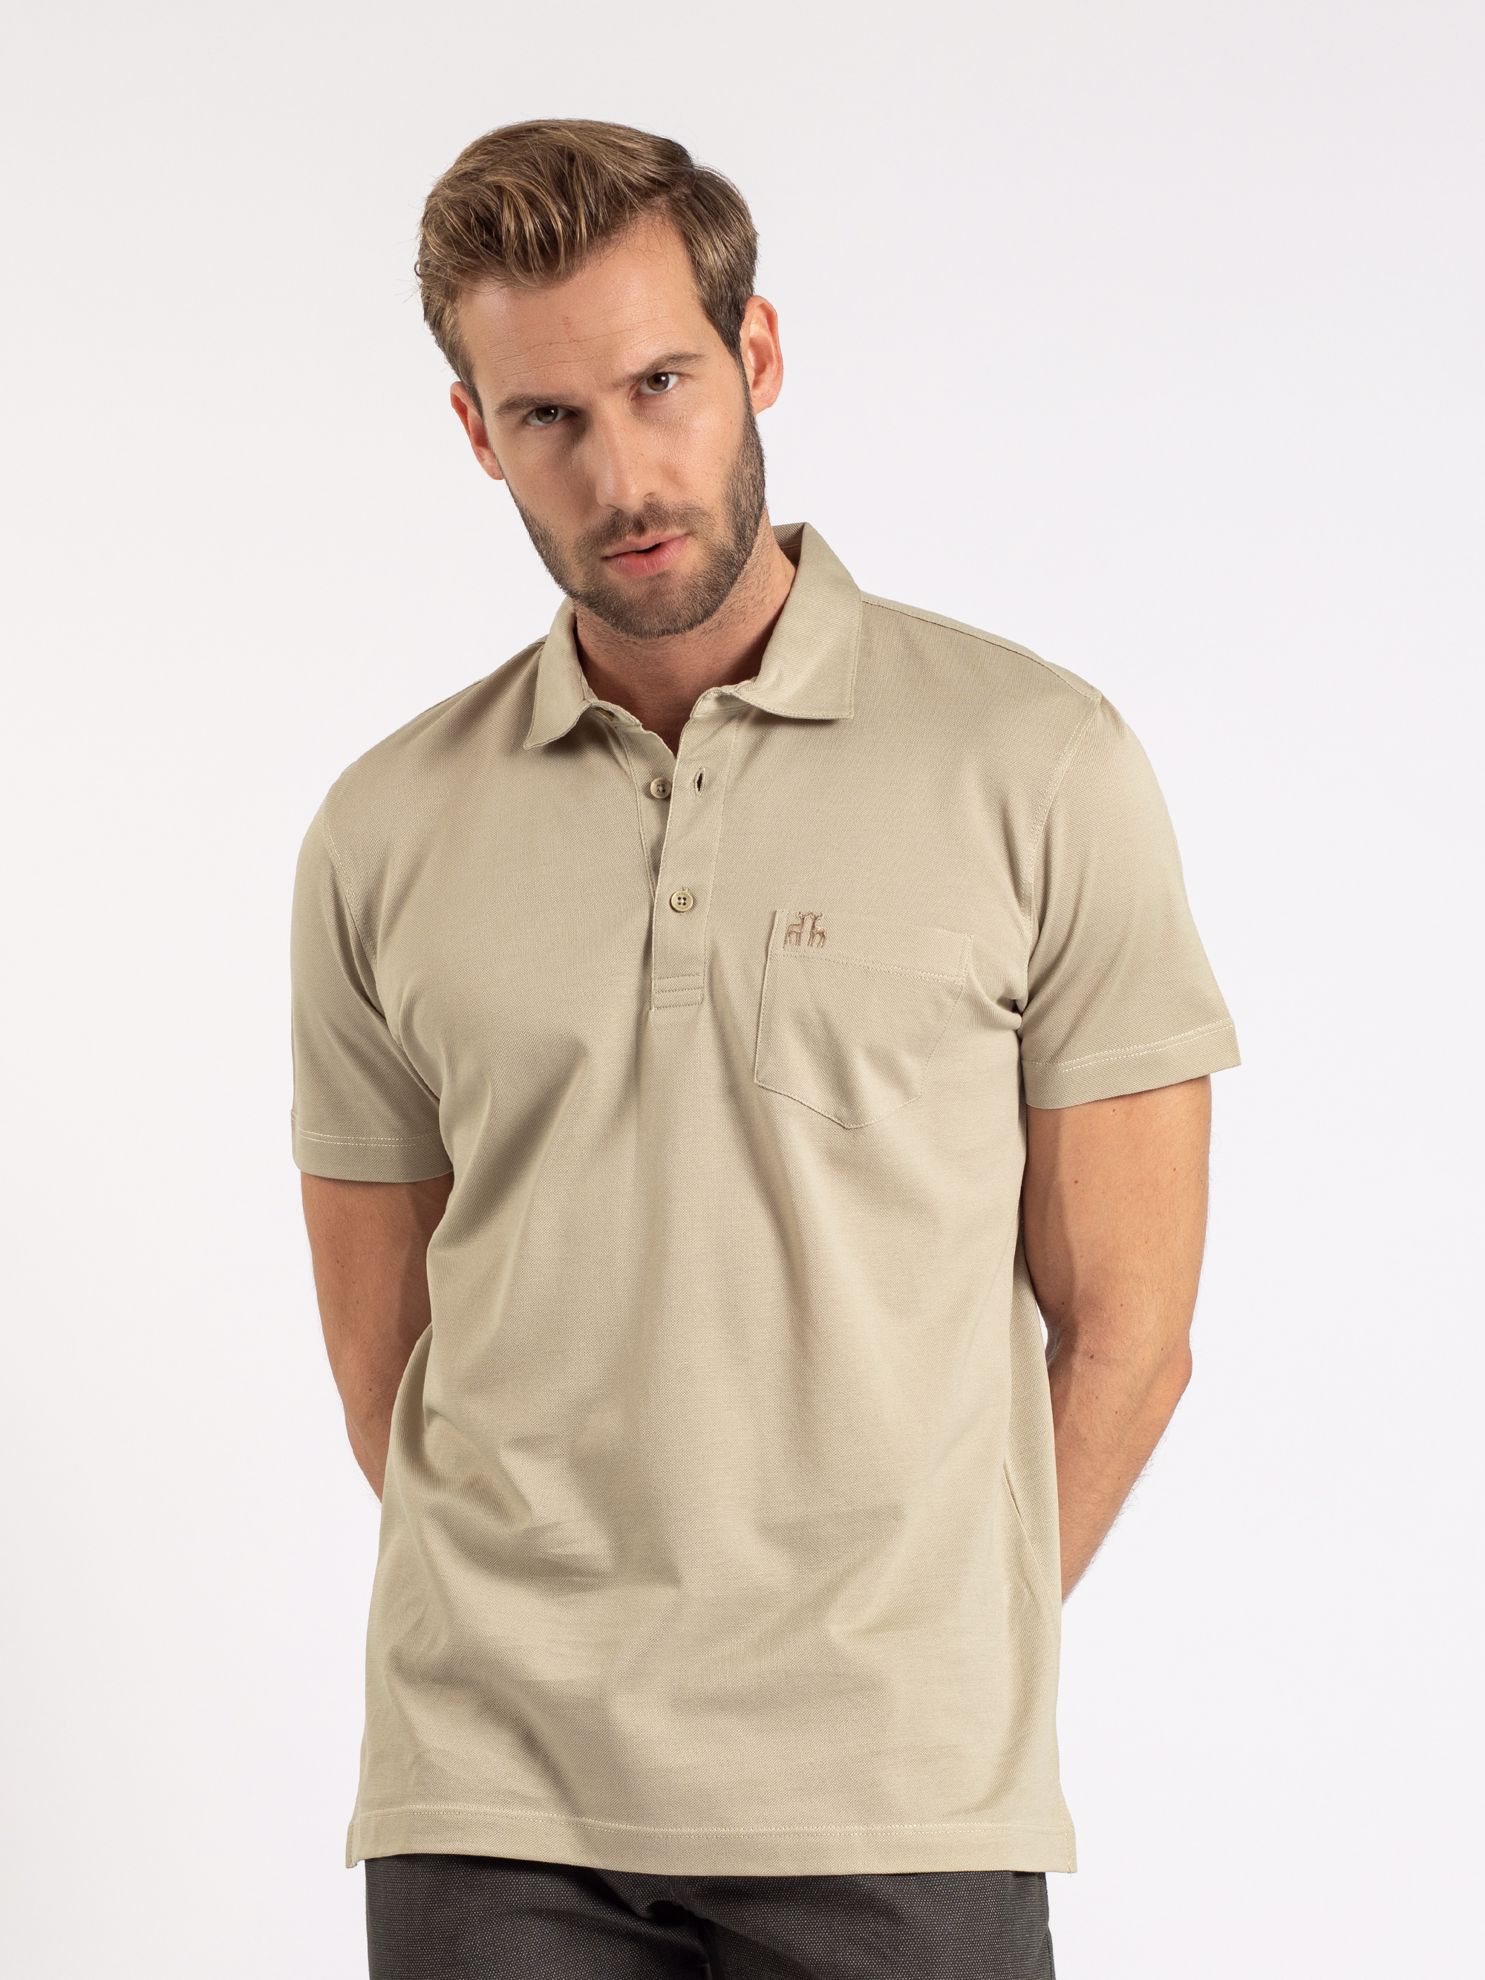 Karaca Erkek Regular Fit Polo Yaka Tişört-Taş. ürün görseli